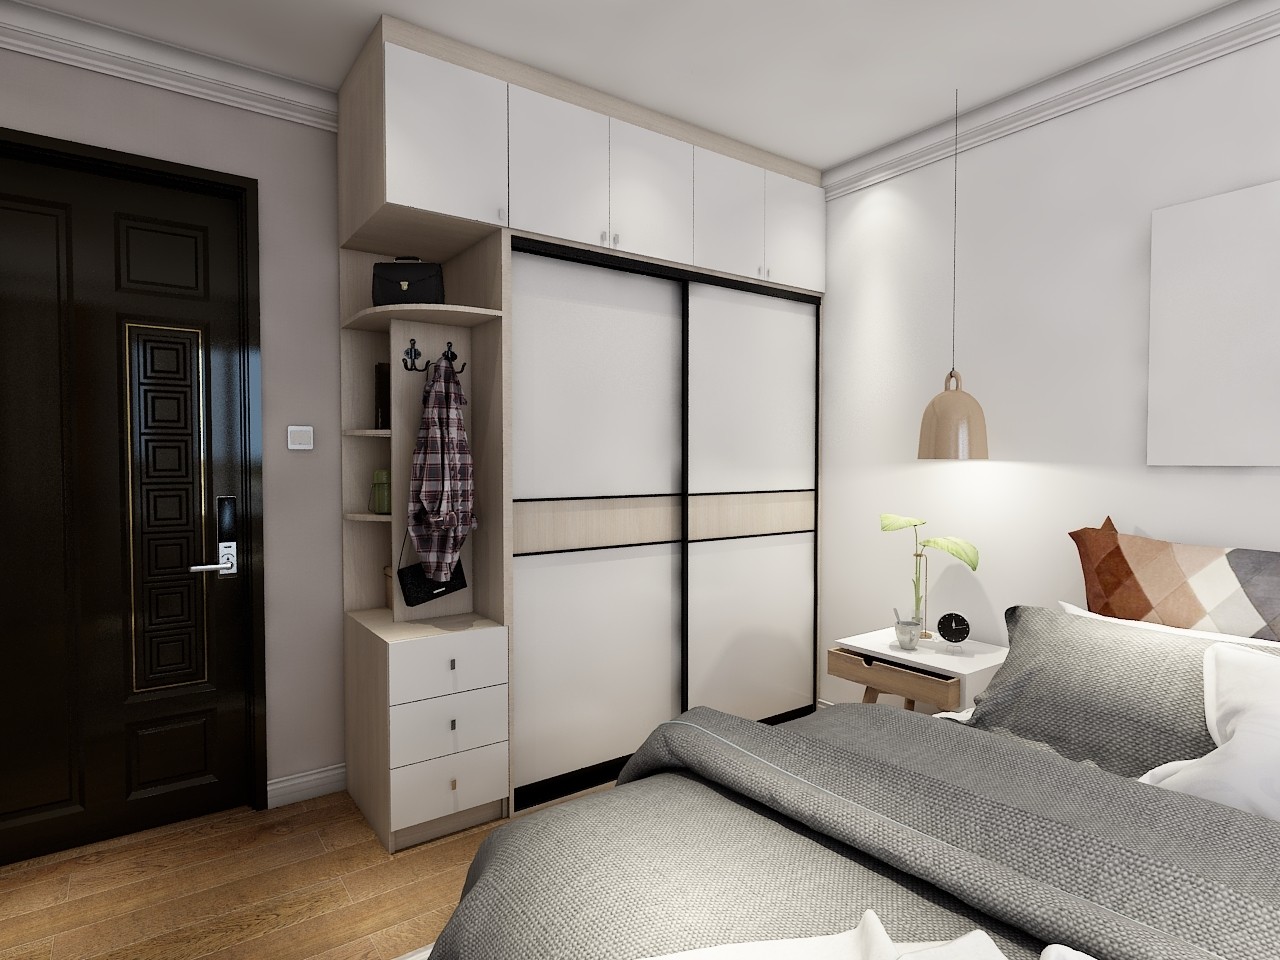 转角衣柜其实也称为l型衣柜,一般依靠卧室90°转角式墙体进行设计